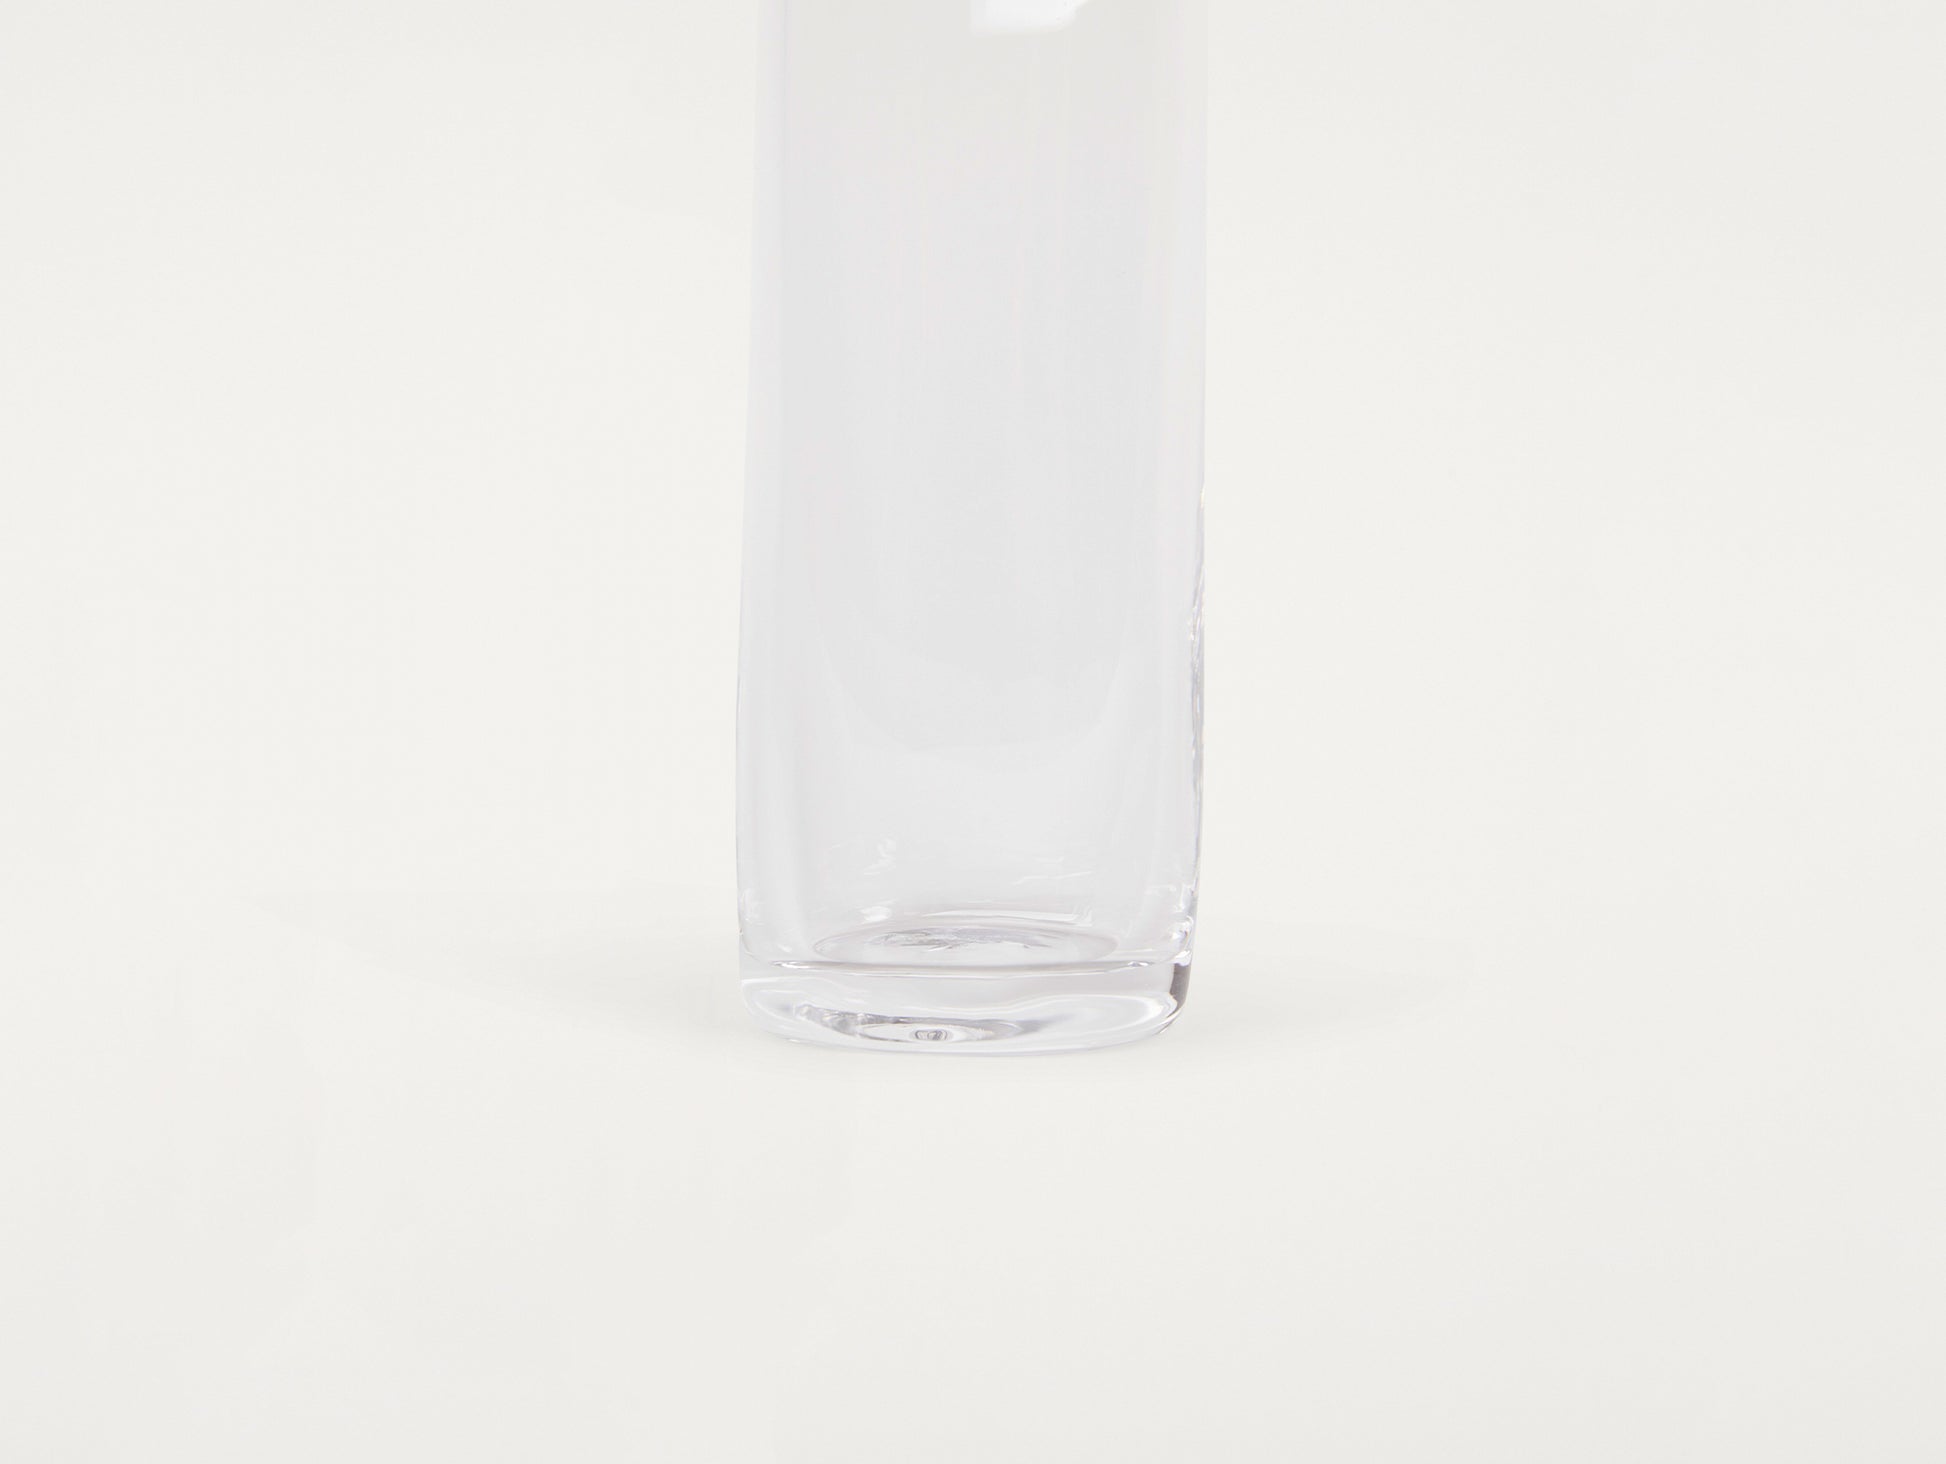 0405 Bottle by Frama - Narrow (450 ml)